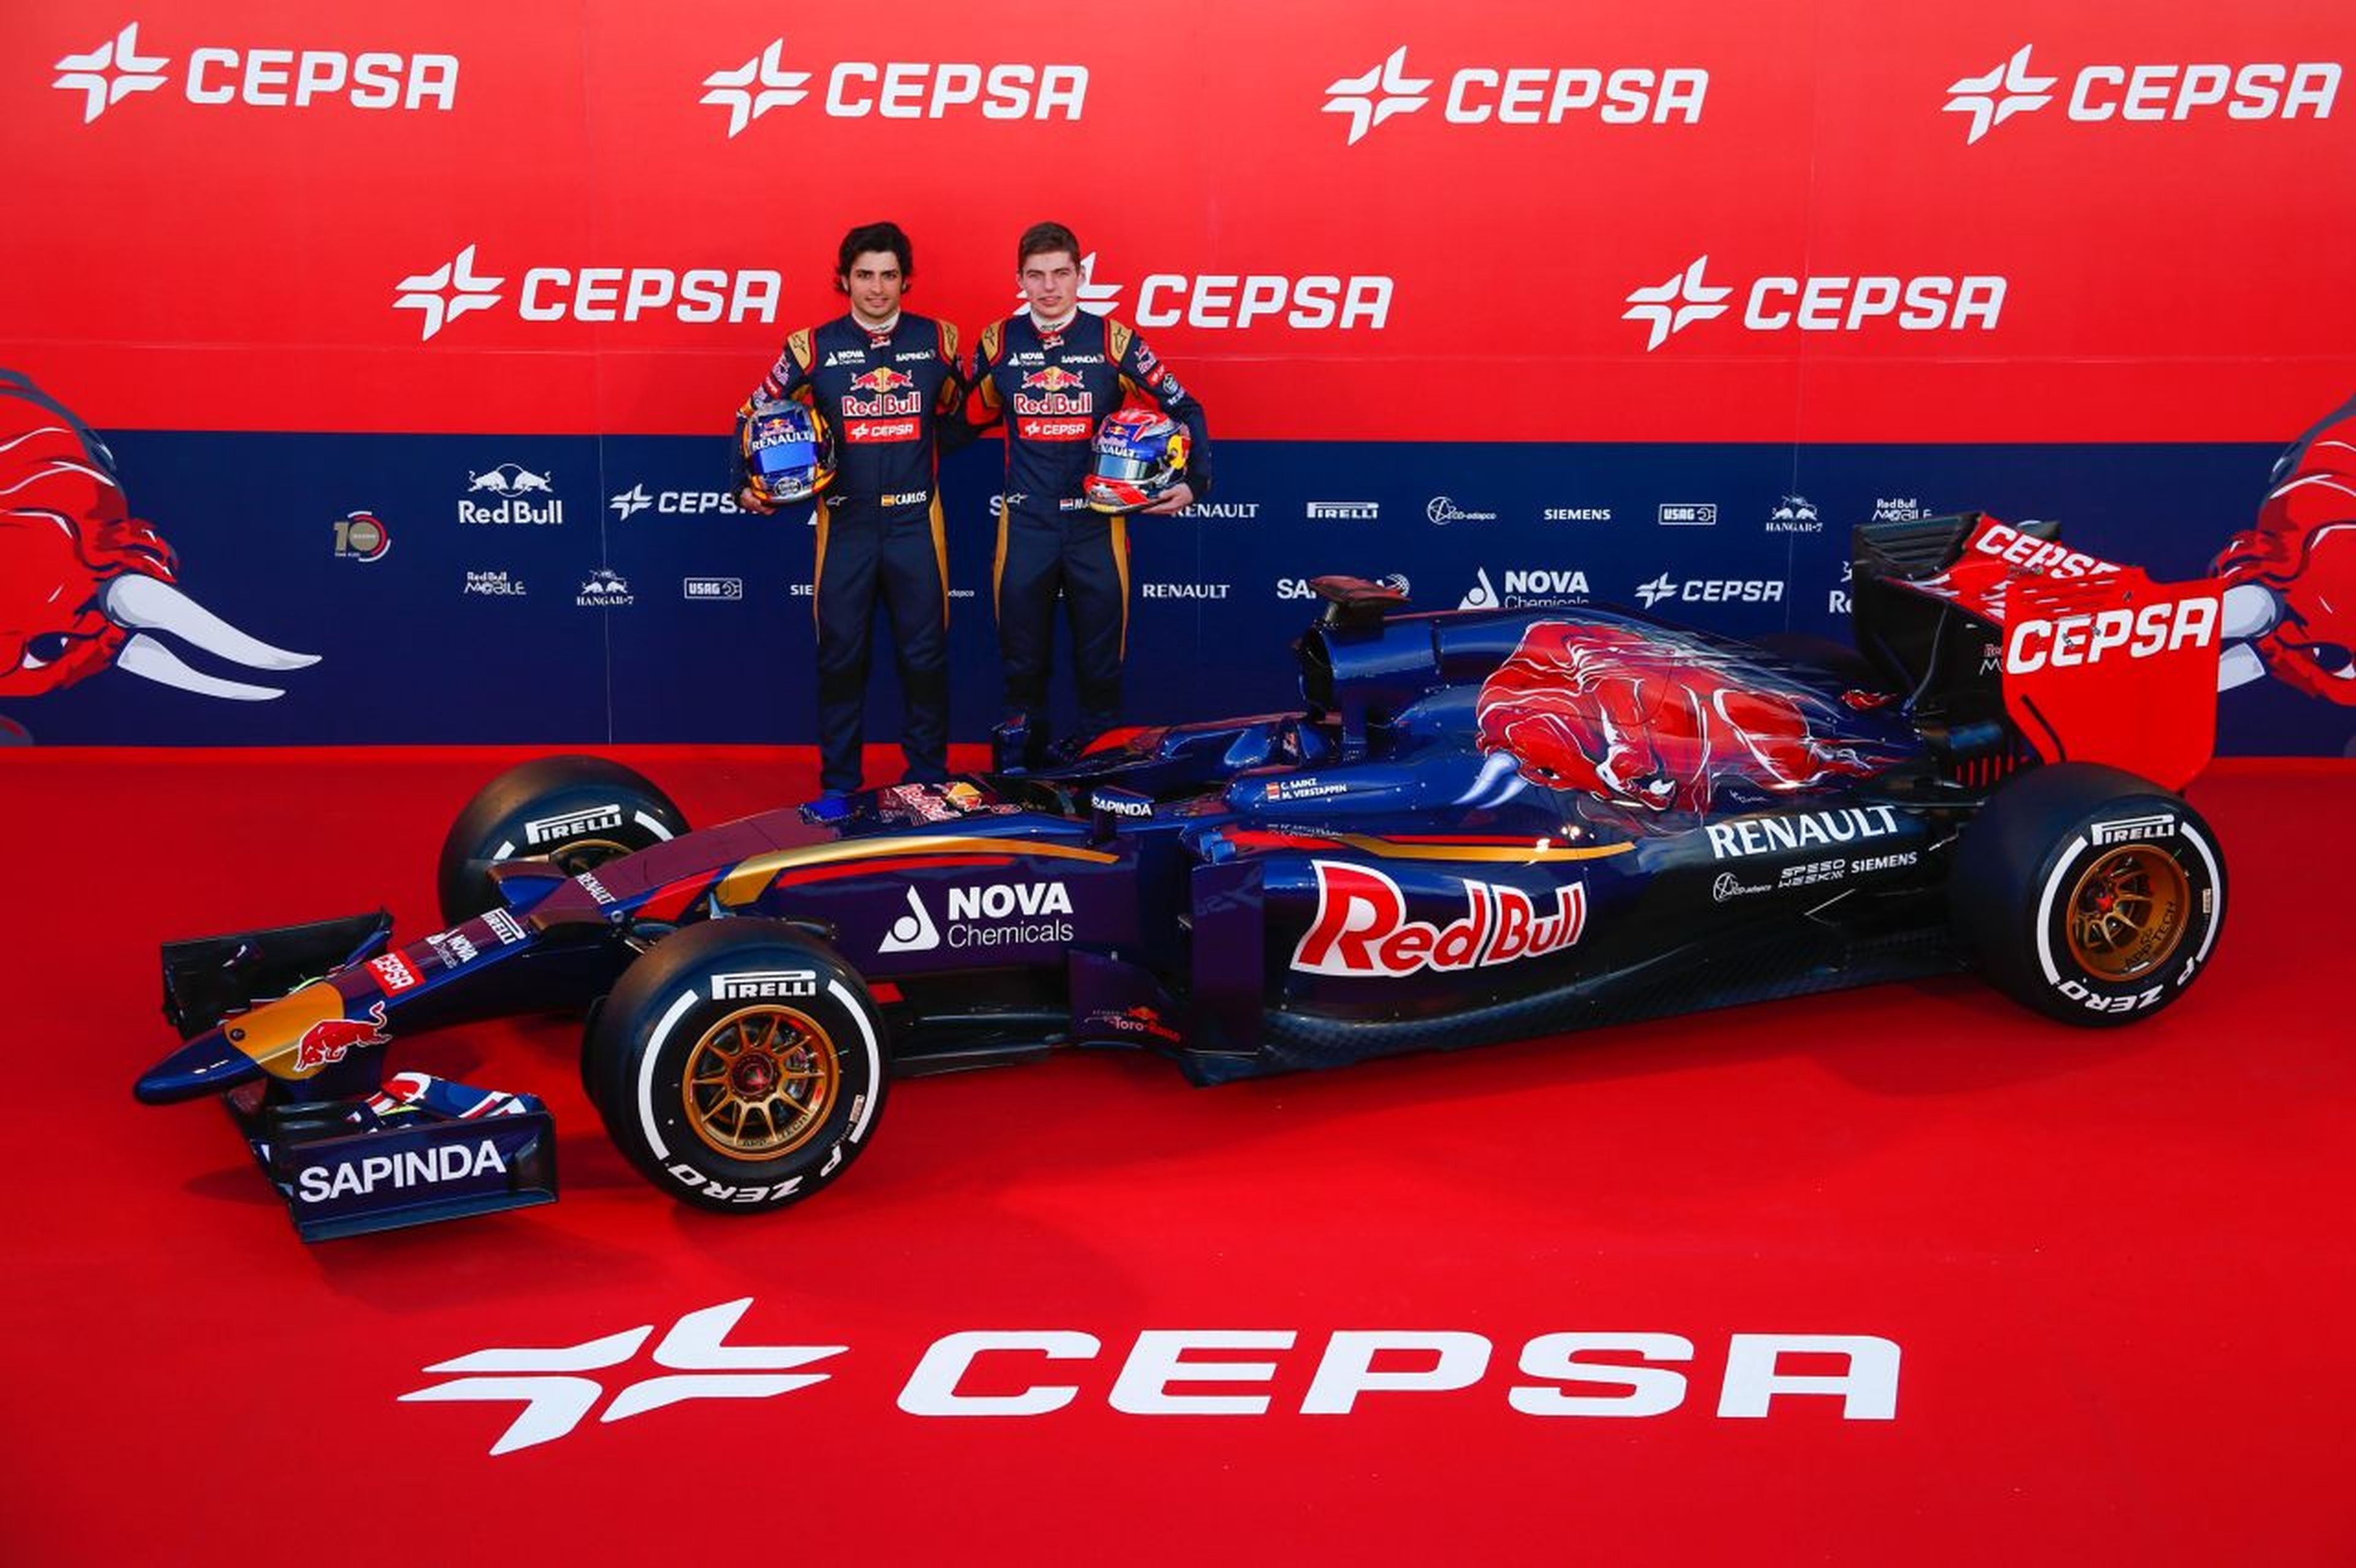 Presentación del equipo Toro Rosso en 2015